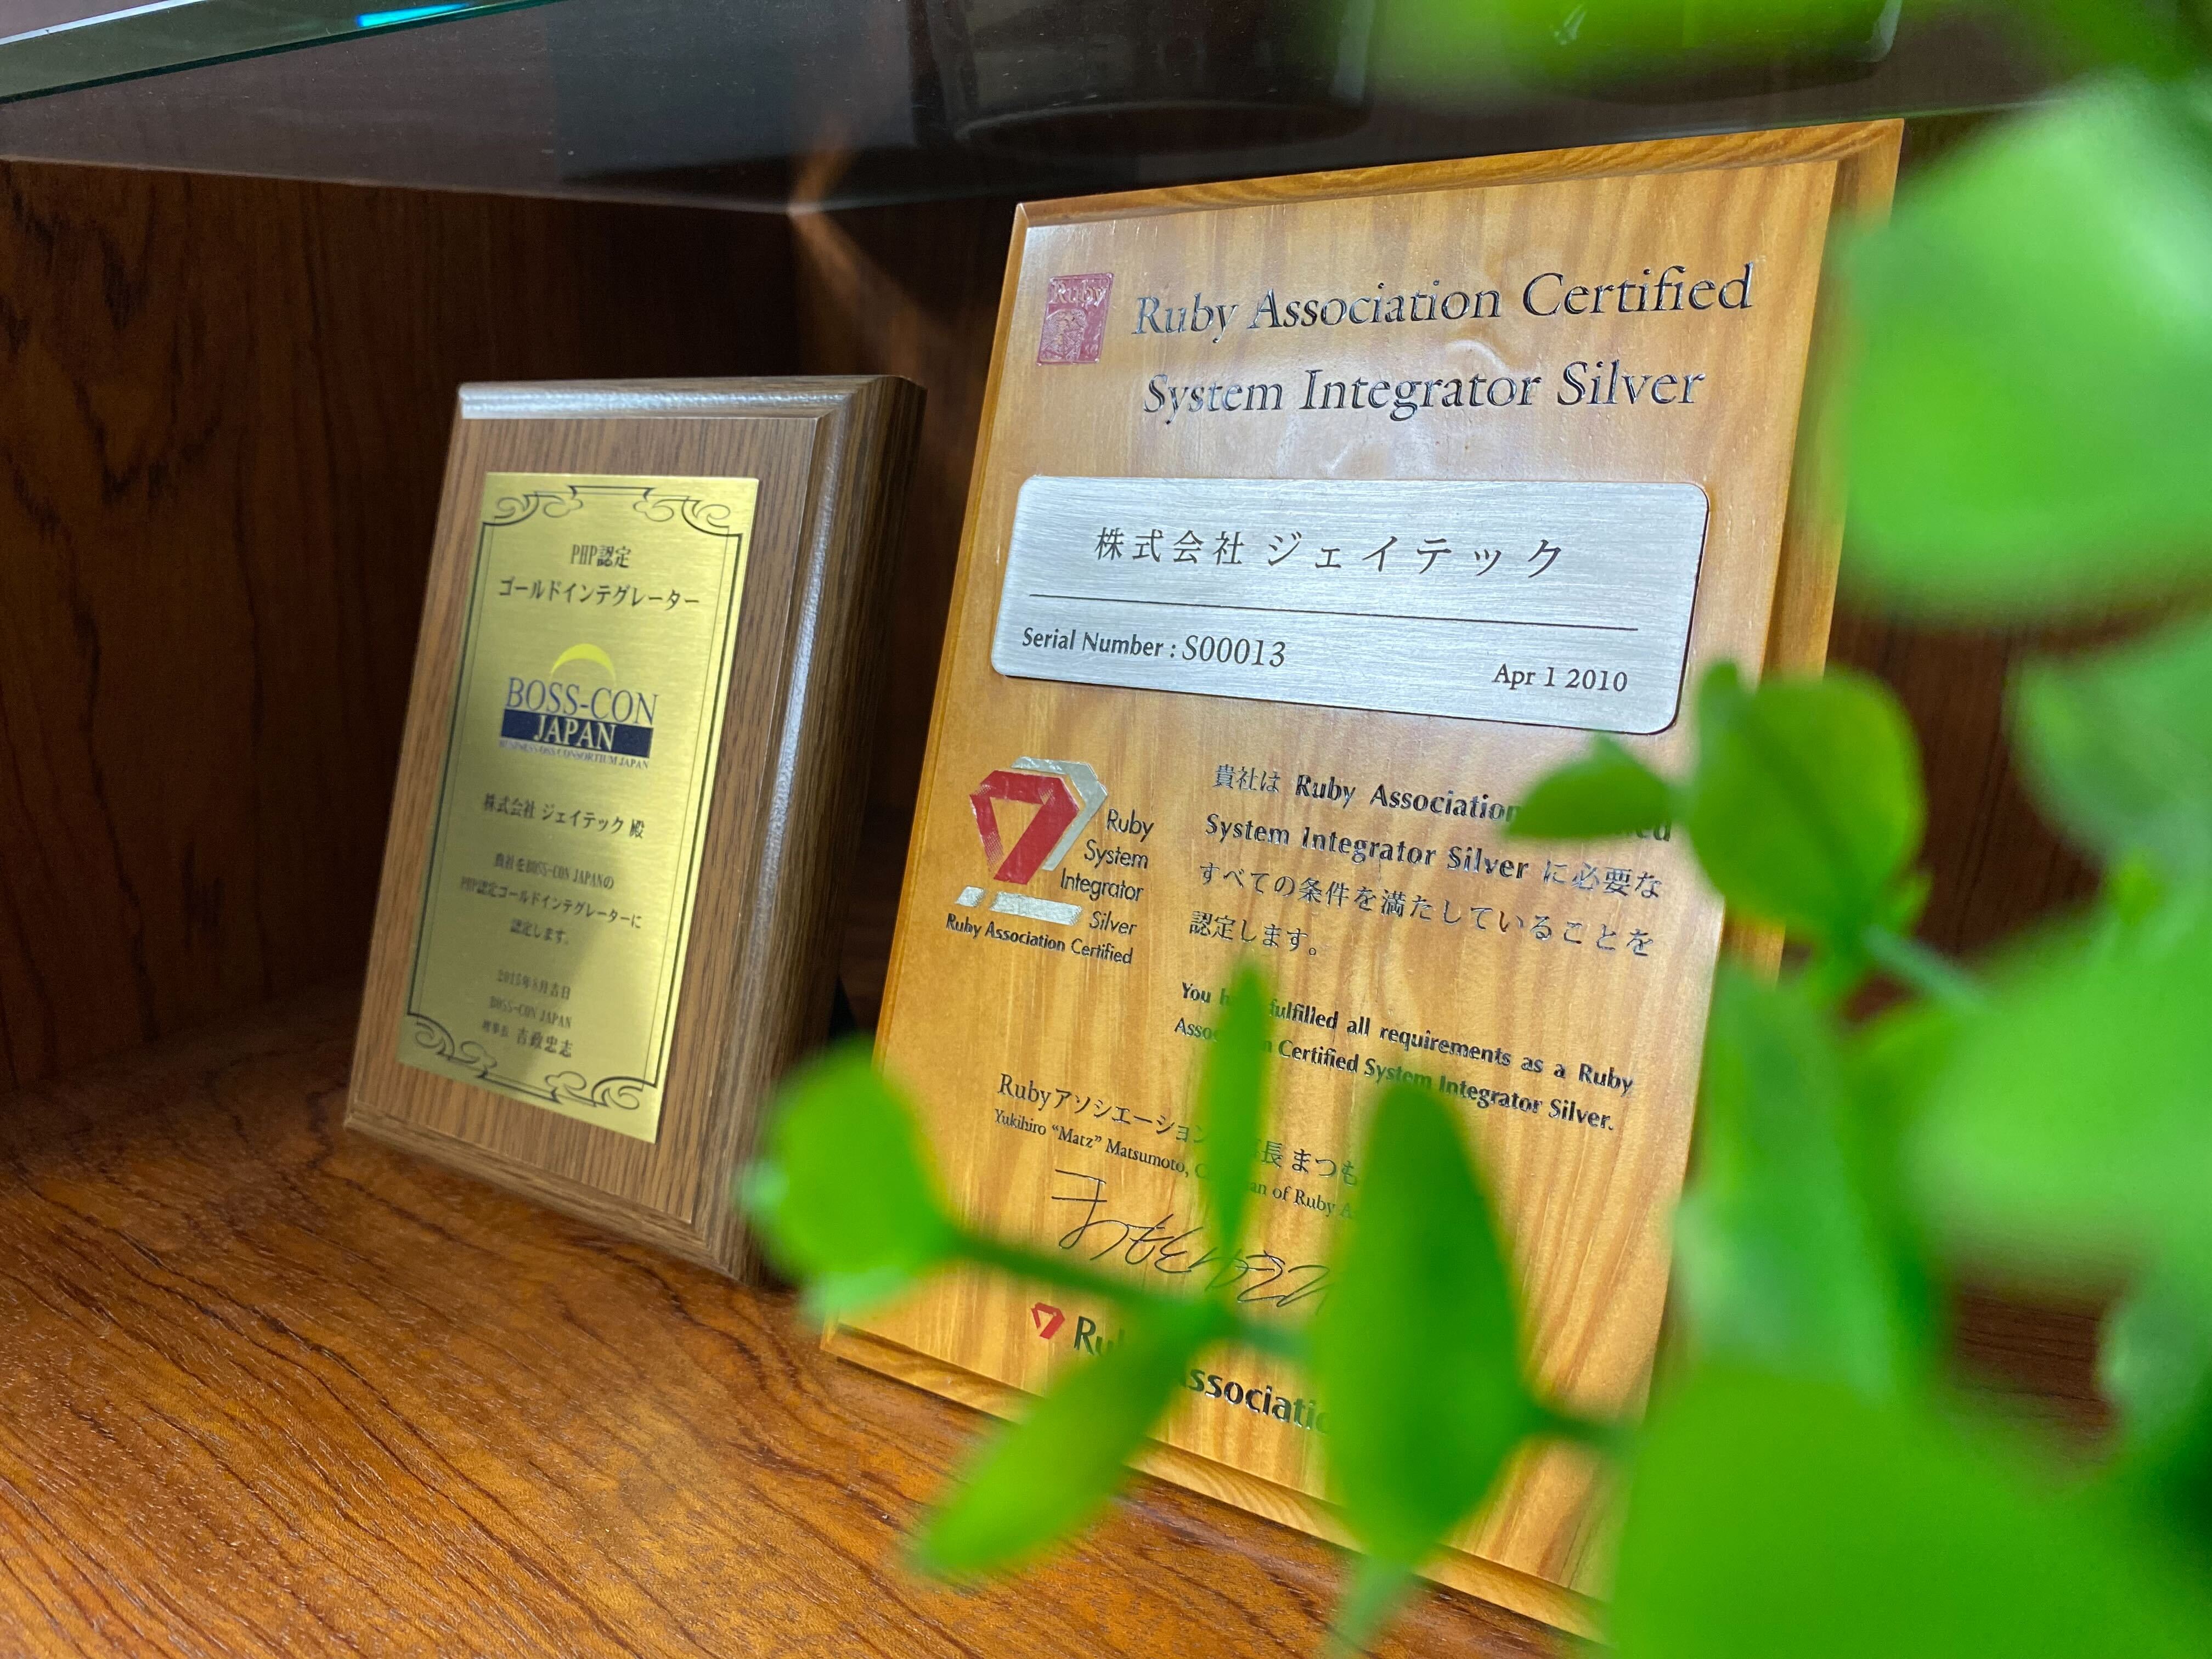 大阪市女性活躍リーディングカンパニー認証を取得しました。
健康経営優良法人2023に（中小規模法人部門）に認定されました。
その他にも様々な認証を取得しています。